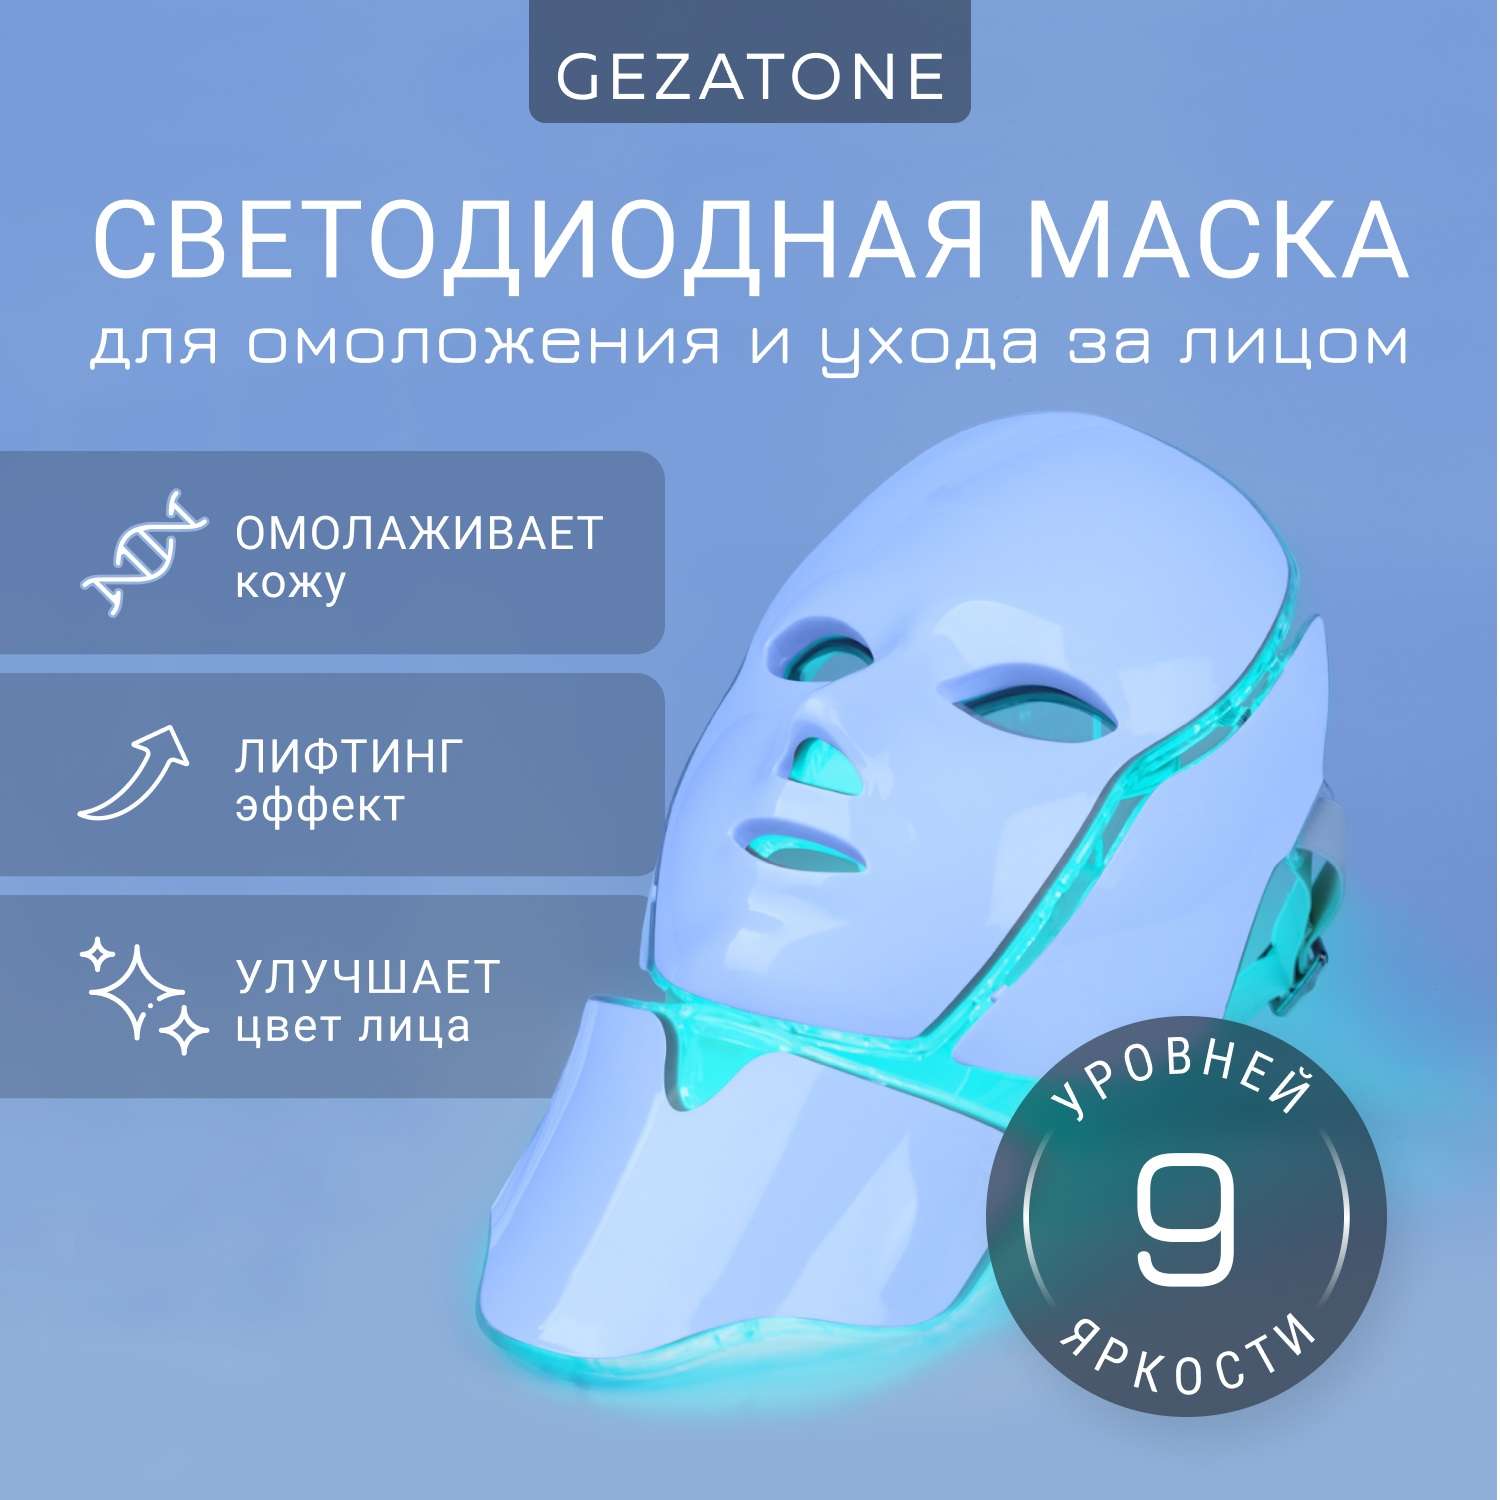 Светодиодная маска Gezatone для омоложения кожи лица m1090 - фото 1